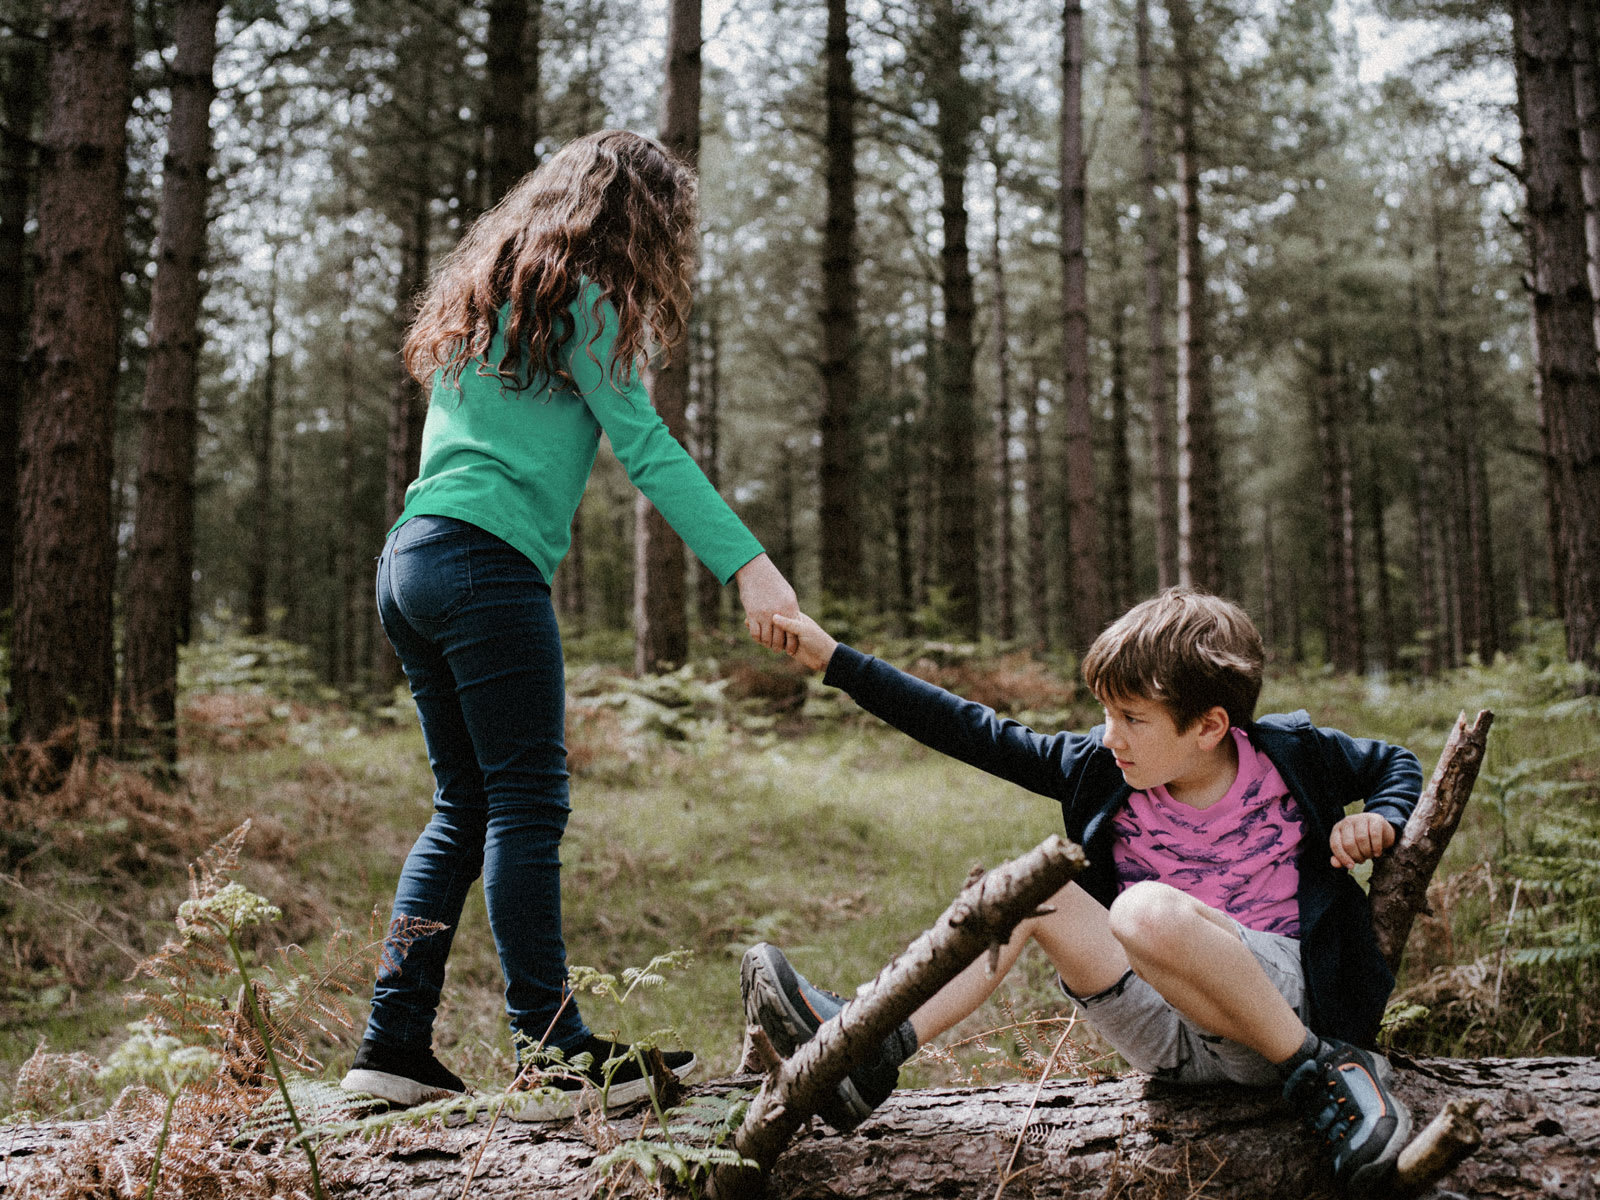 Zwei Kinder spielen gemeinsam auf einem gefällten Baumstamm im Wald. Wir sehen, wie eines der beiden Kinder dem anderen nach einem Fall wieder aufhilft.